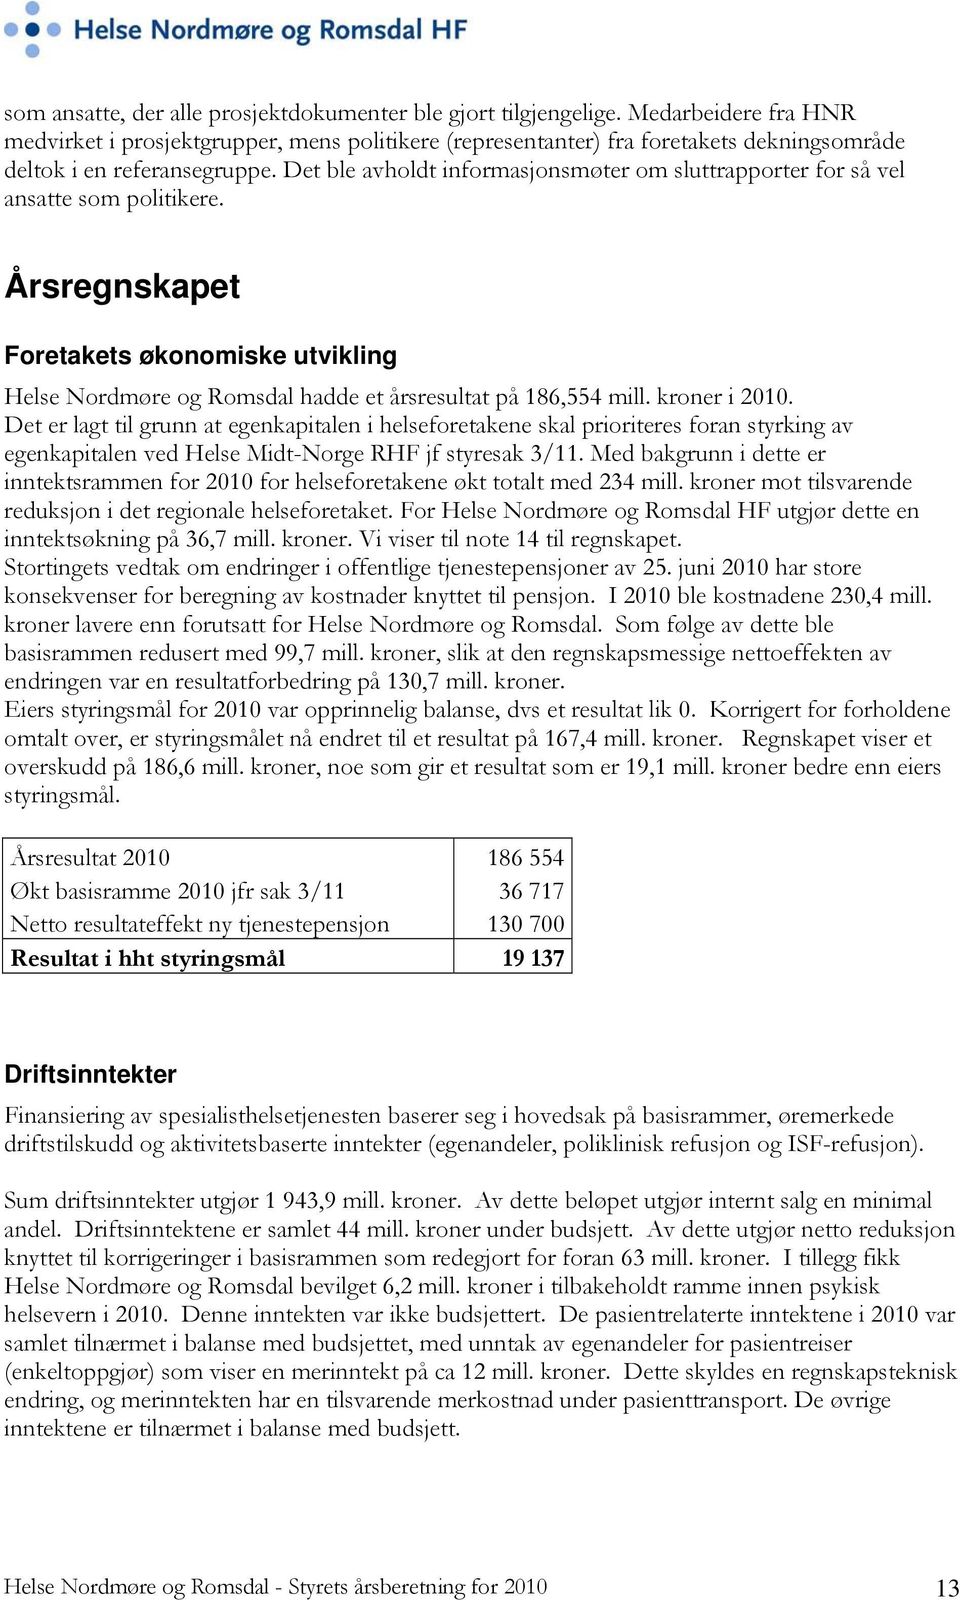 Det ble avholdt informasjonsmøter om sluttrapporter for så vel ansatte som politikere. Årsregnskapet Foretakets økonomiske utvikling Helse Nordmøre og Romsdal hadde et årsresultat på 186,554 mill.